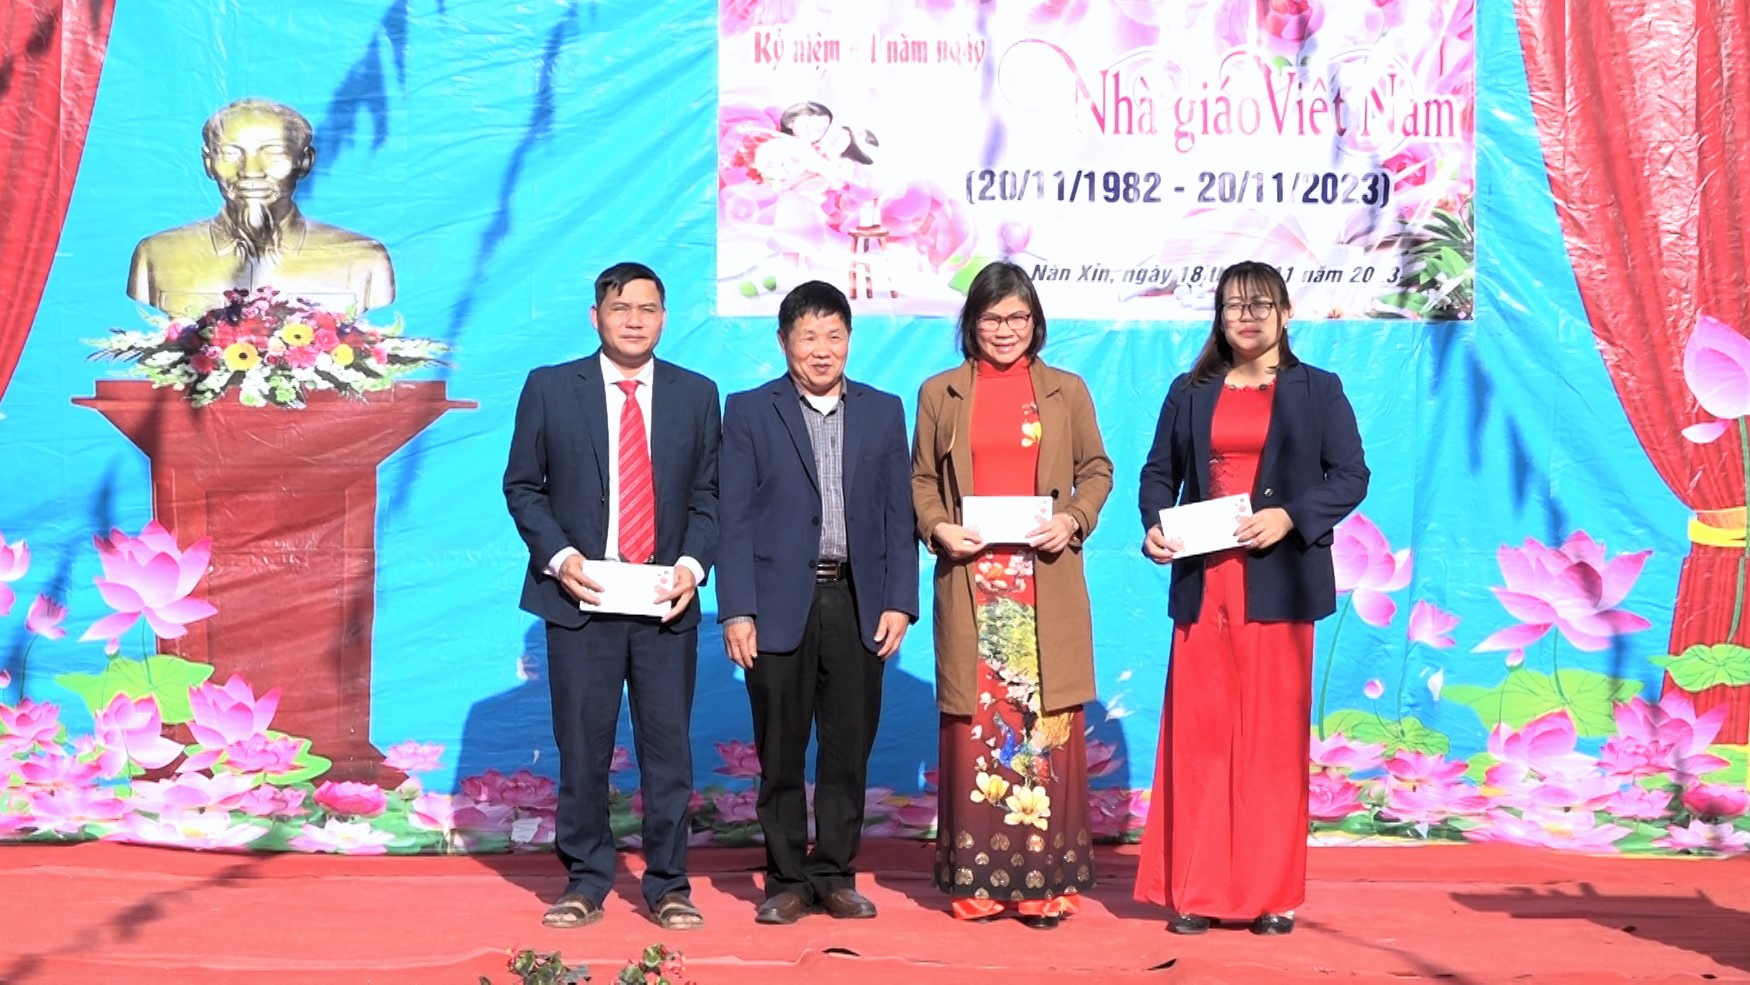 Liên trường xã Nàn Xỉn tổ chức kỷ niệm 41 năm ngày nhà giáo Việt Nam (20/11/1082-20/11/2023)